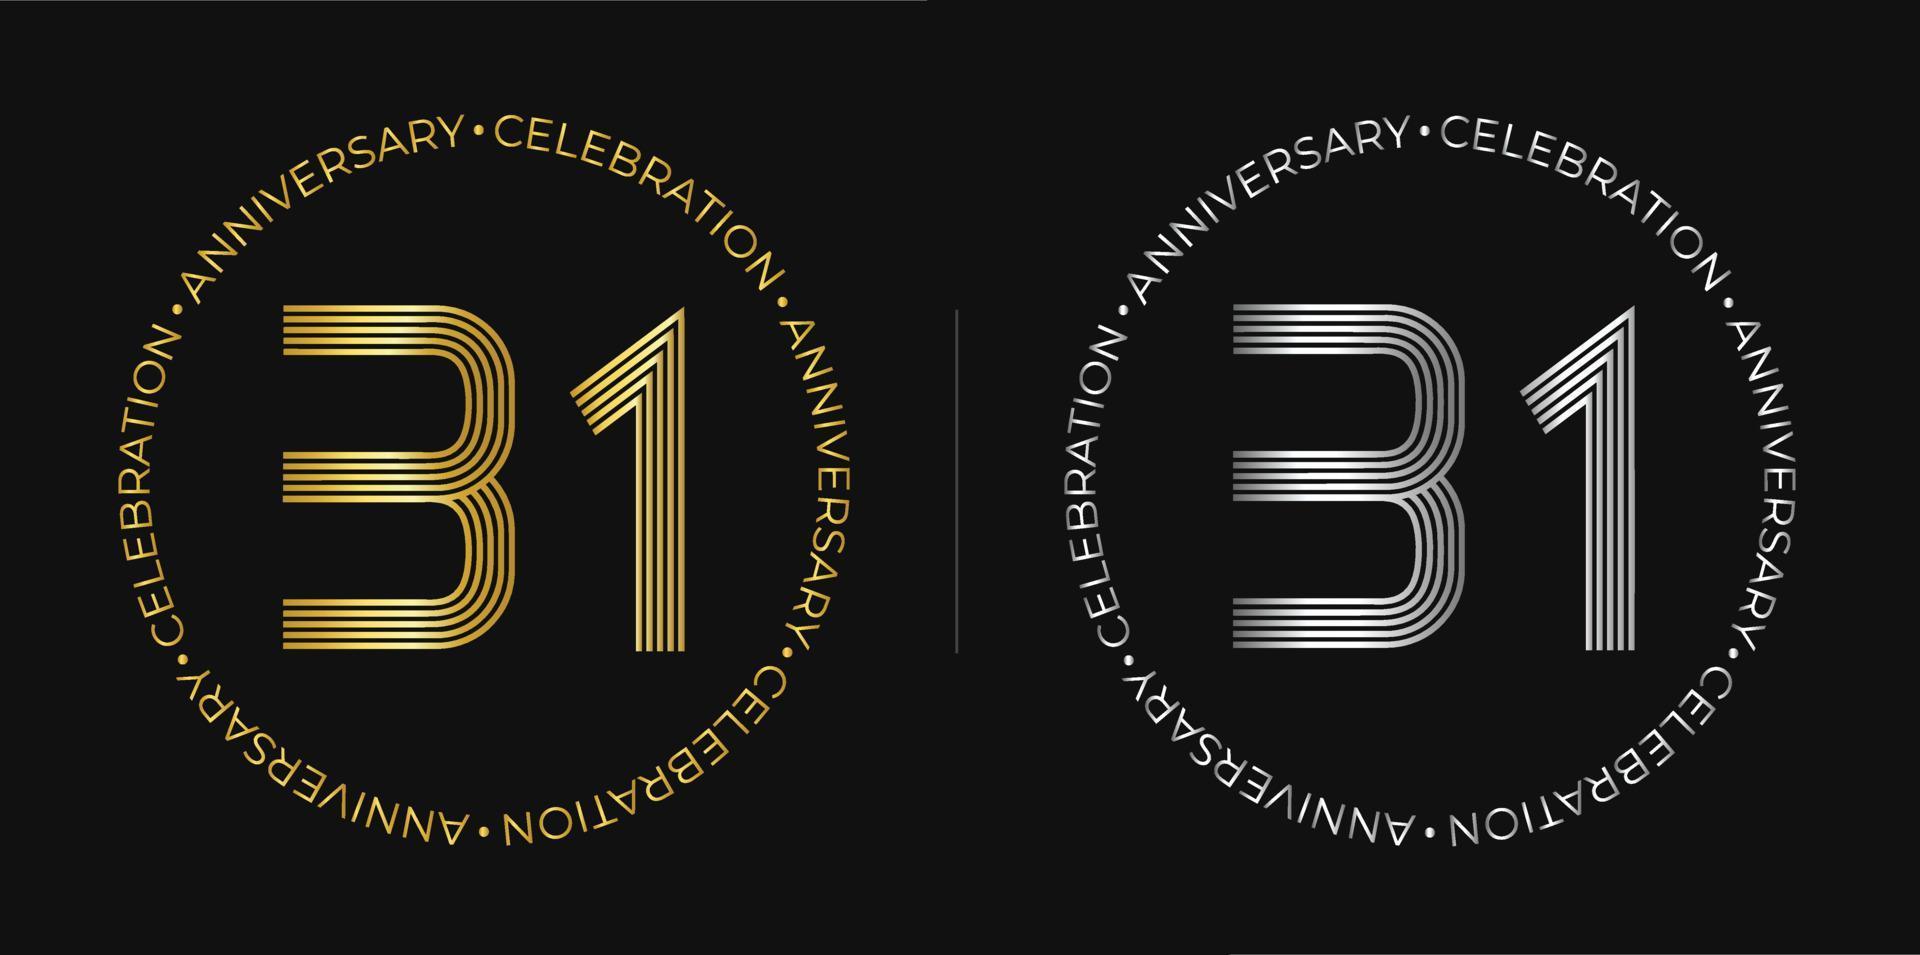 31 cumpleaños. banner de celebración de aniversario de treinta y un años en colores dorado y plateado. logo circular con diseño de números originales en líneas elegantes. vector